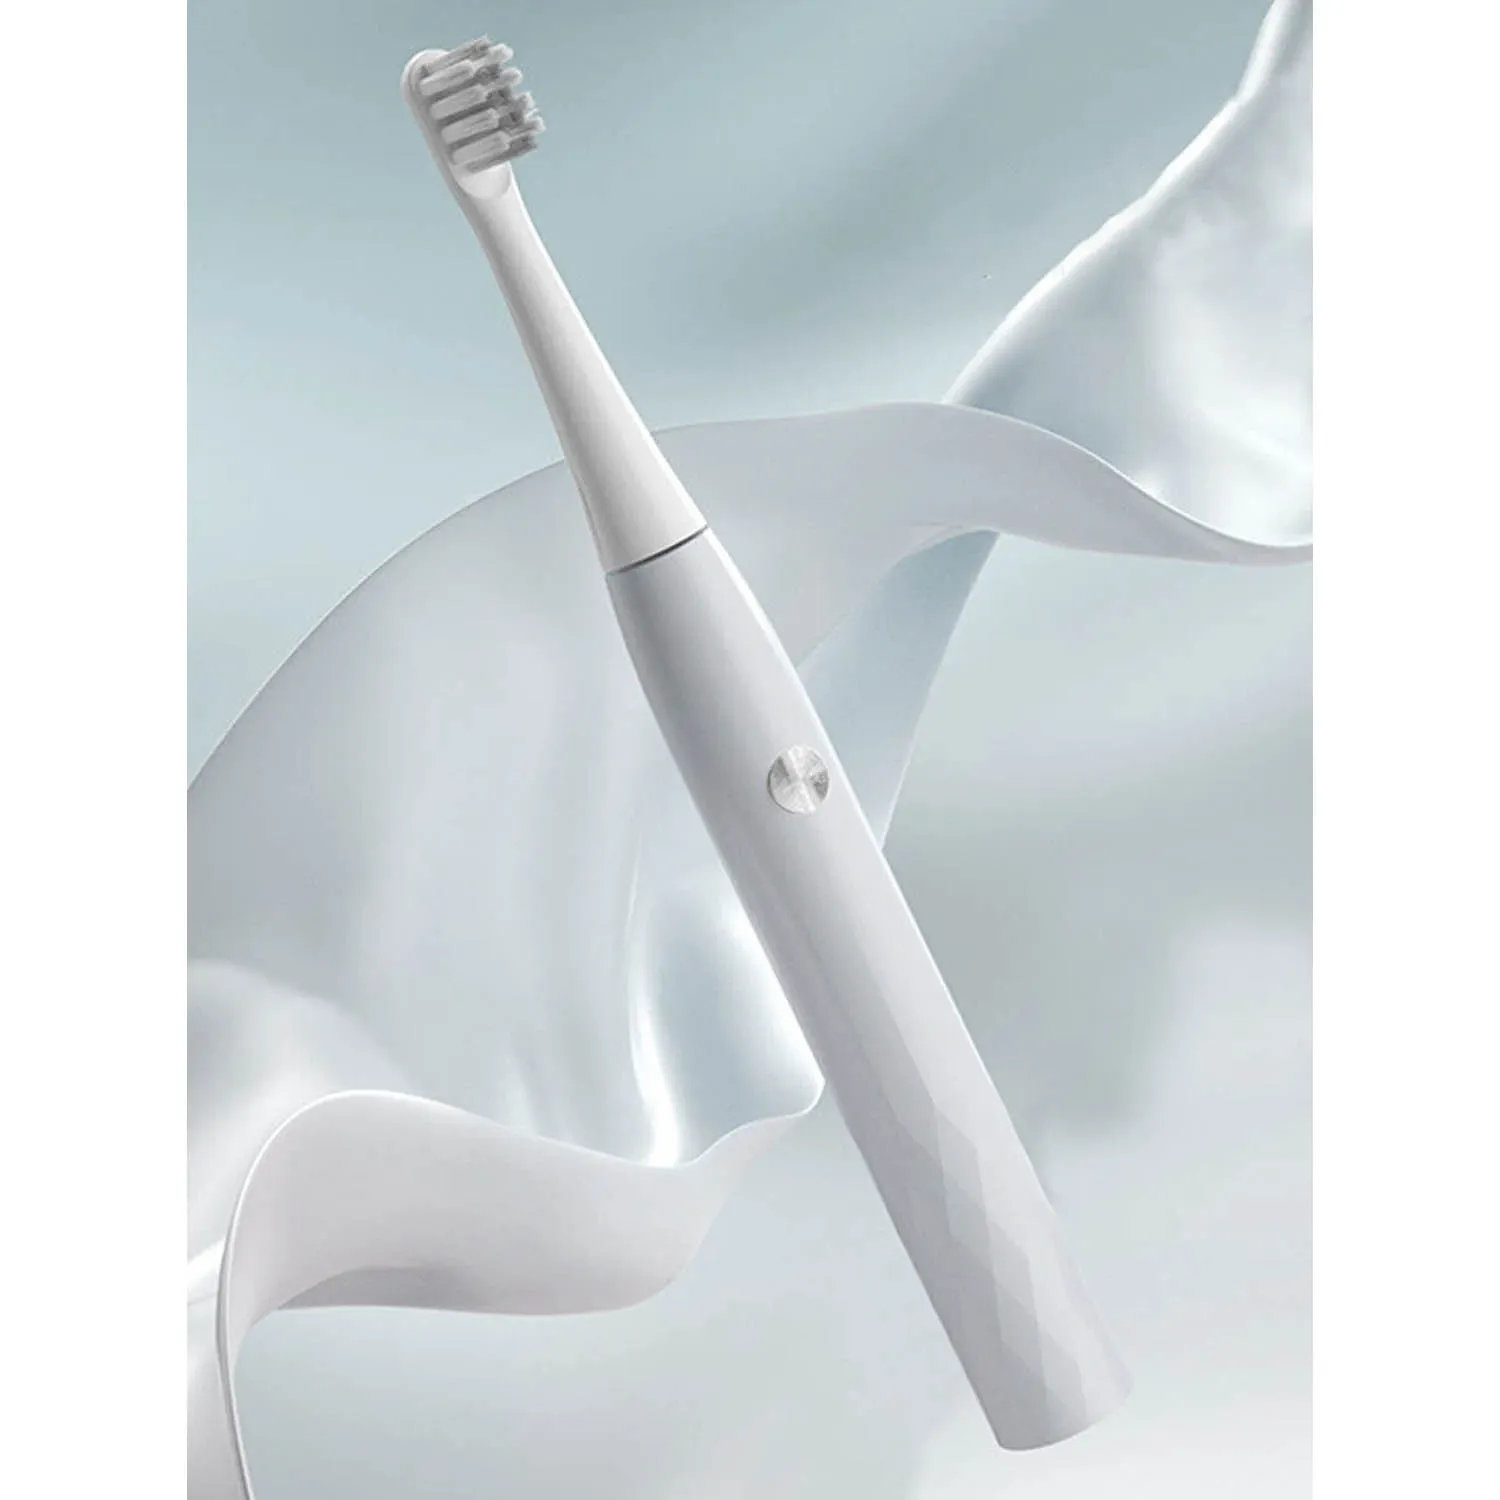 Электрическая зубная щетка Xiaomi Bomidi T501 (белый)